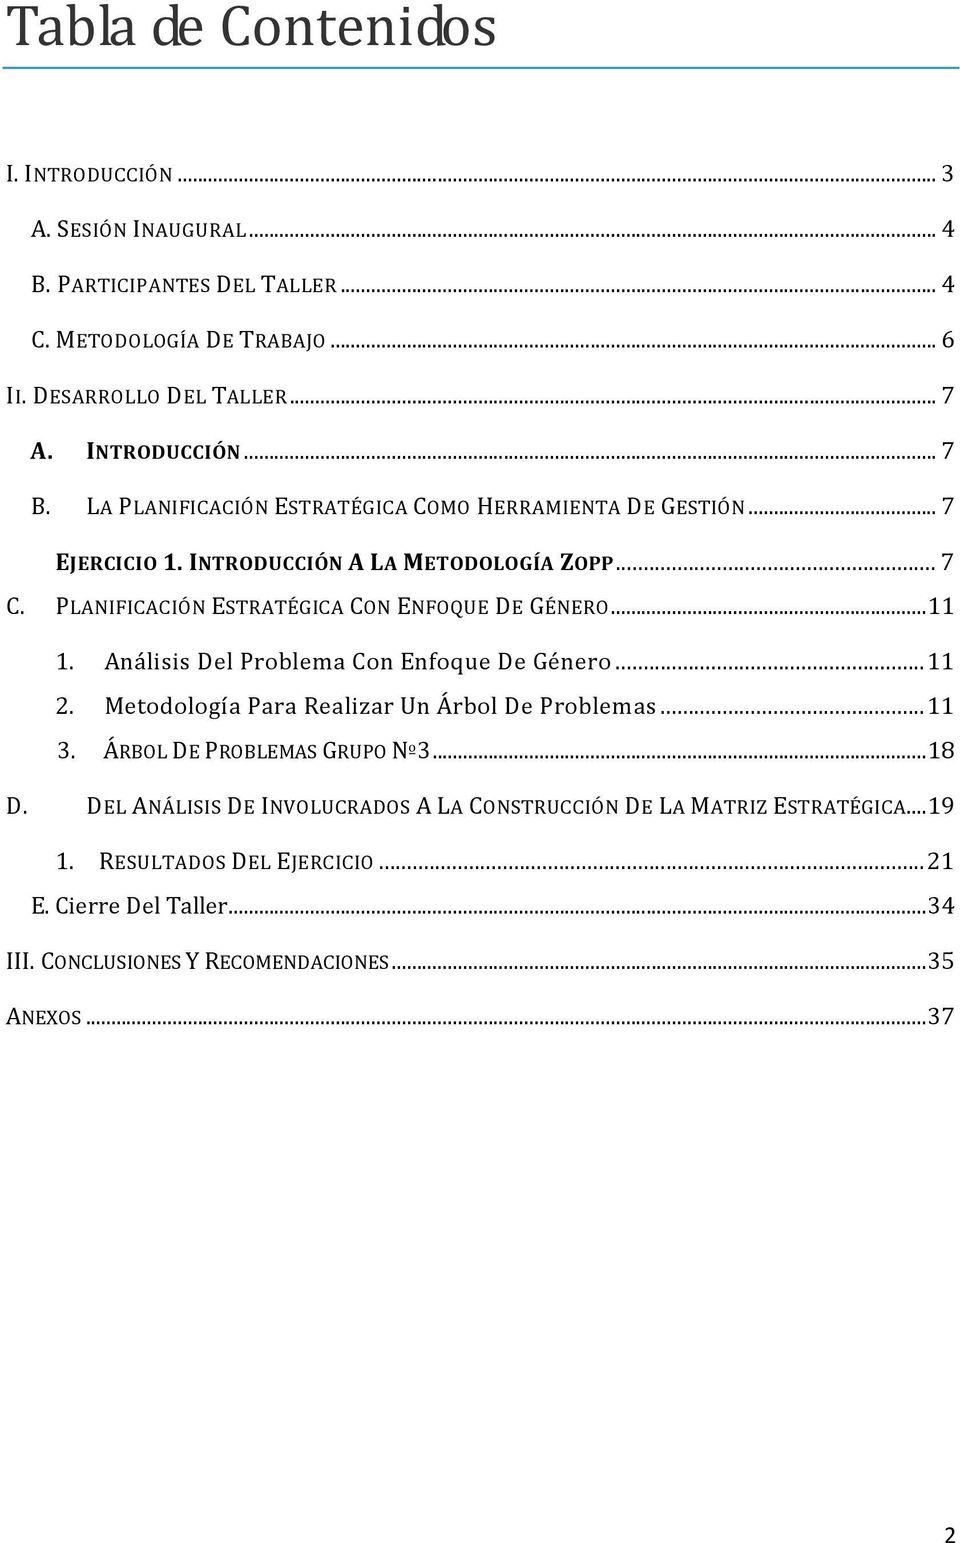 Análisis Del Problema Con Enfoque De Género...11 2. Metodología Para Realizar Un Árbol De Problemas...11 3. ÁRBOL DE PROBLEMAS GRUPO Nº3...18 D.